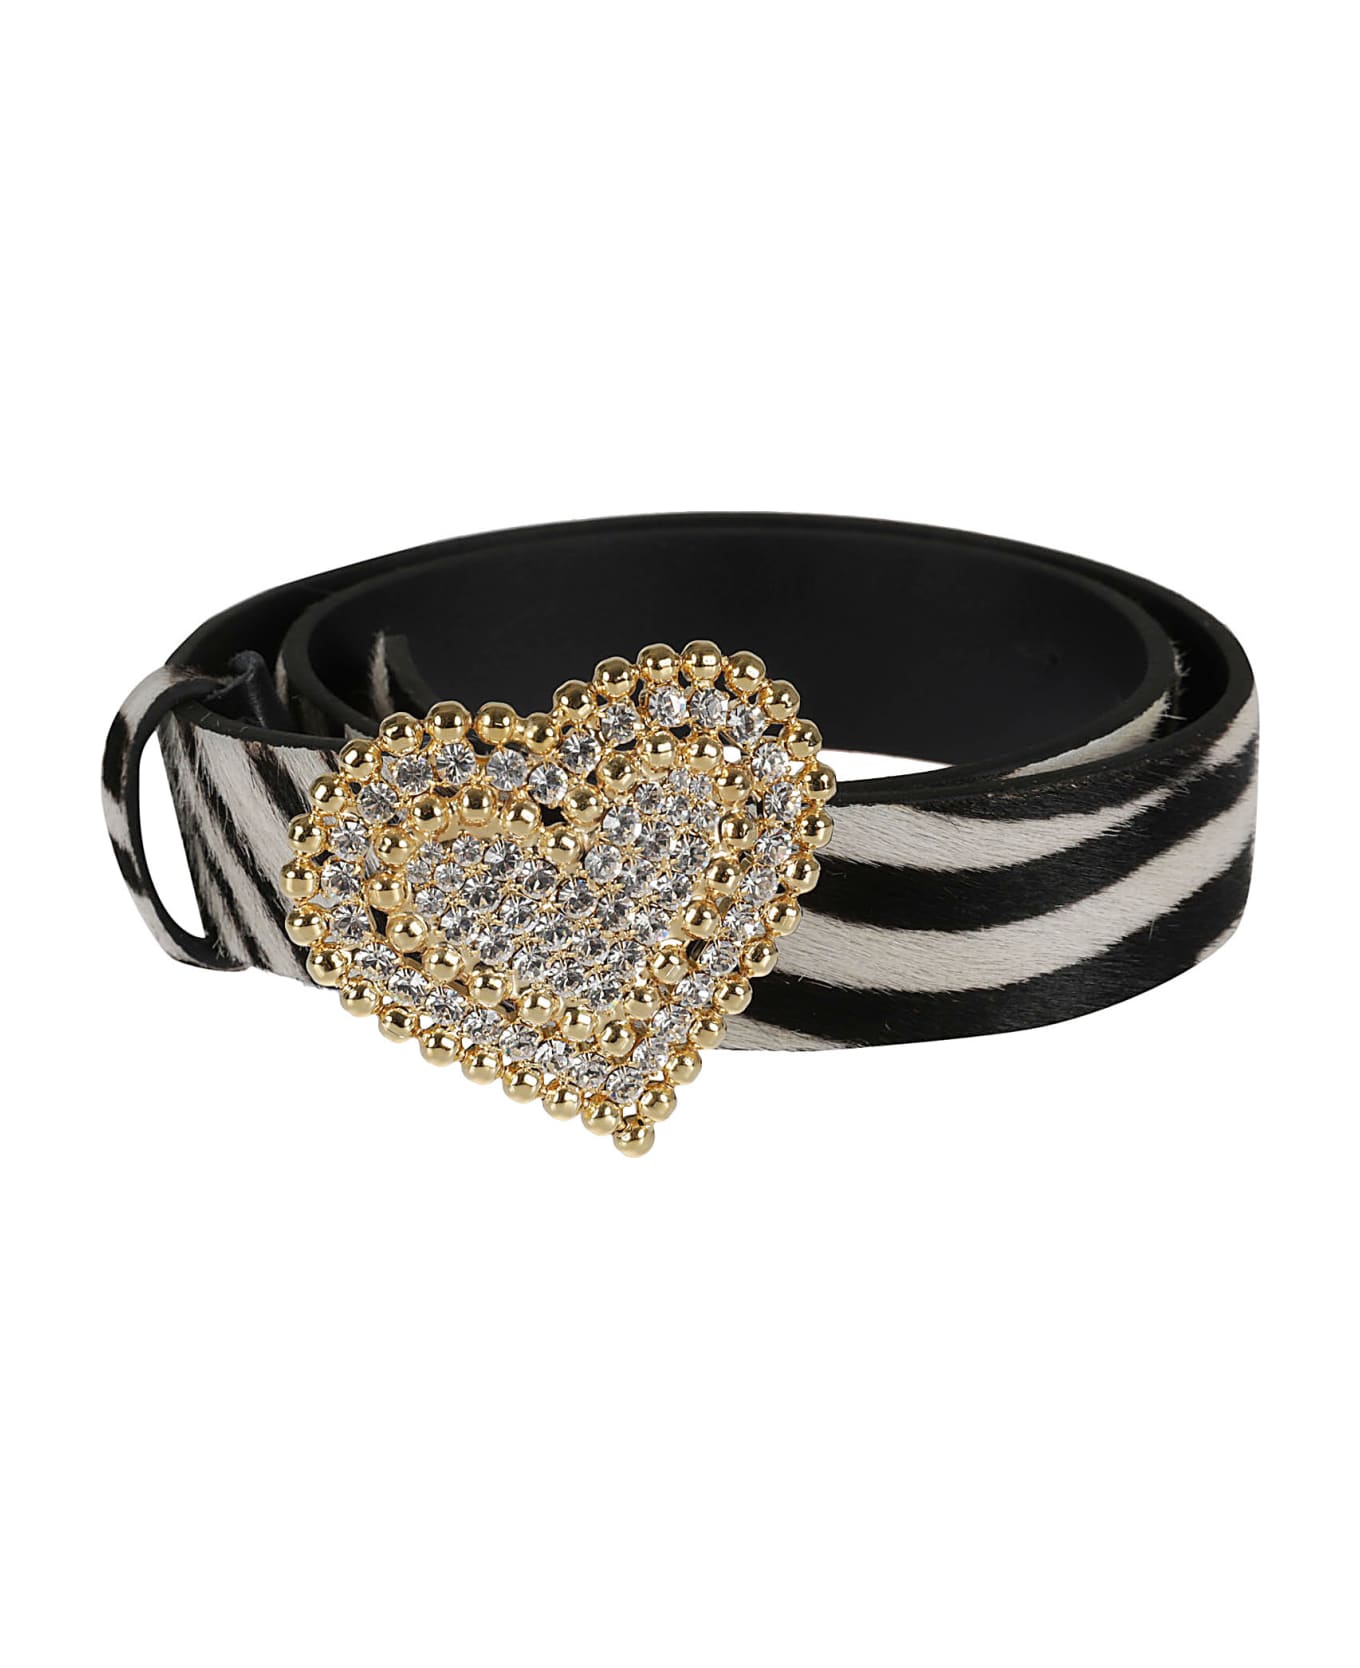 Alessandra Rich Crystal Embellished Heart Buckled Belt - White/Black